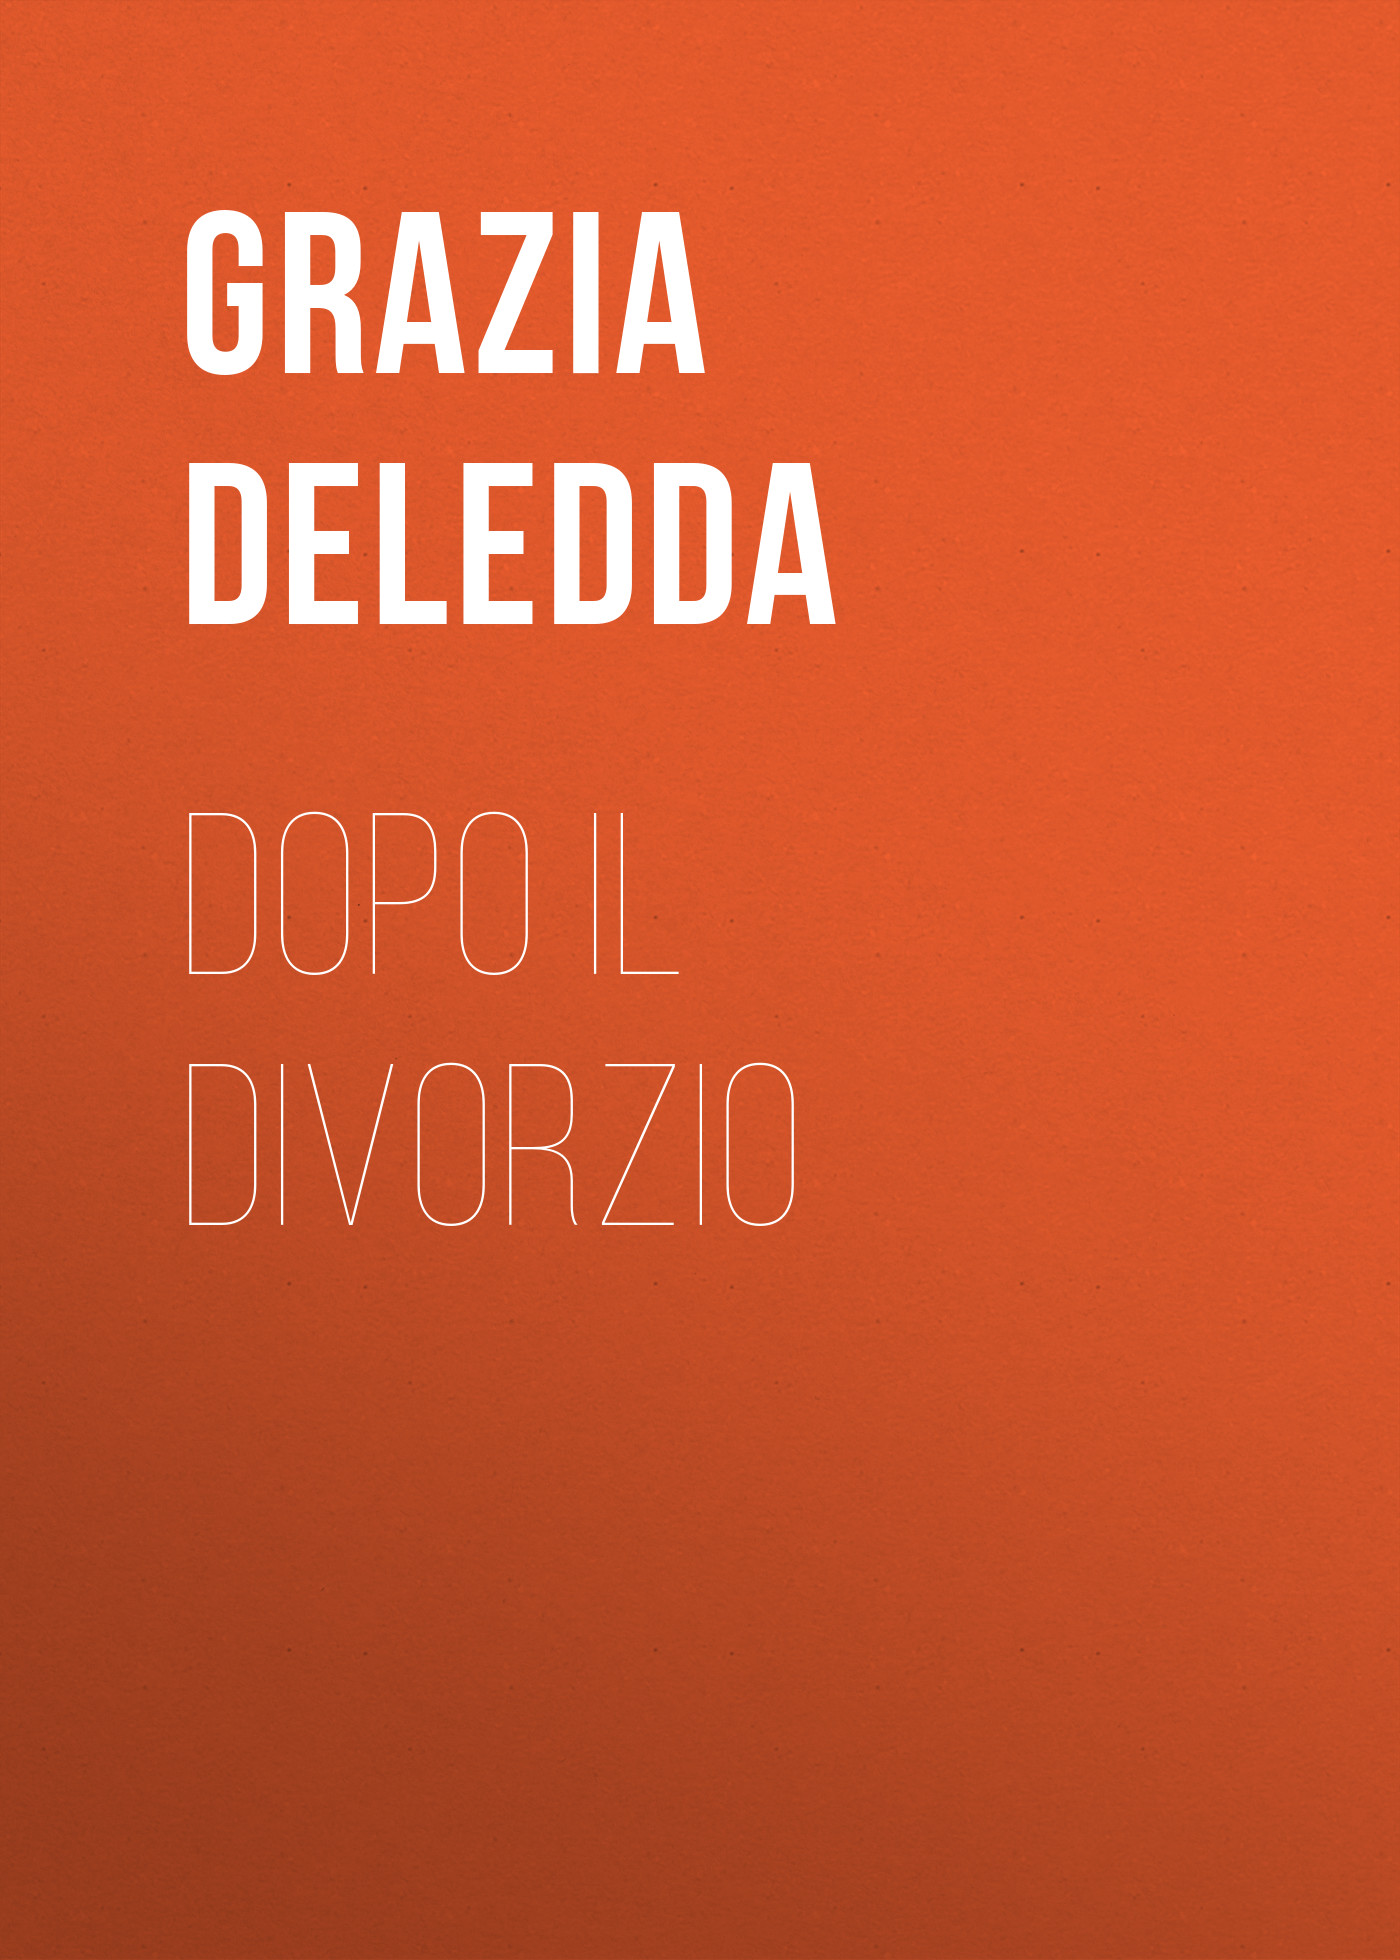 Книга Dopo il divorzio из серии , созданная Grazia Deledda, может относится к жанру Зарубежная старинная литература, Зарубежная классика. Стоимость электронной книги Dopo il divorzio с идентификатором 24548012 составляет 0 руб.